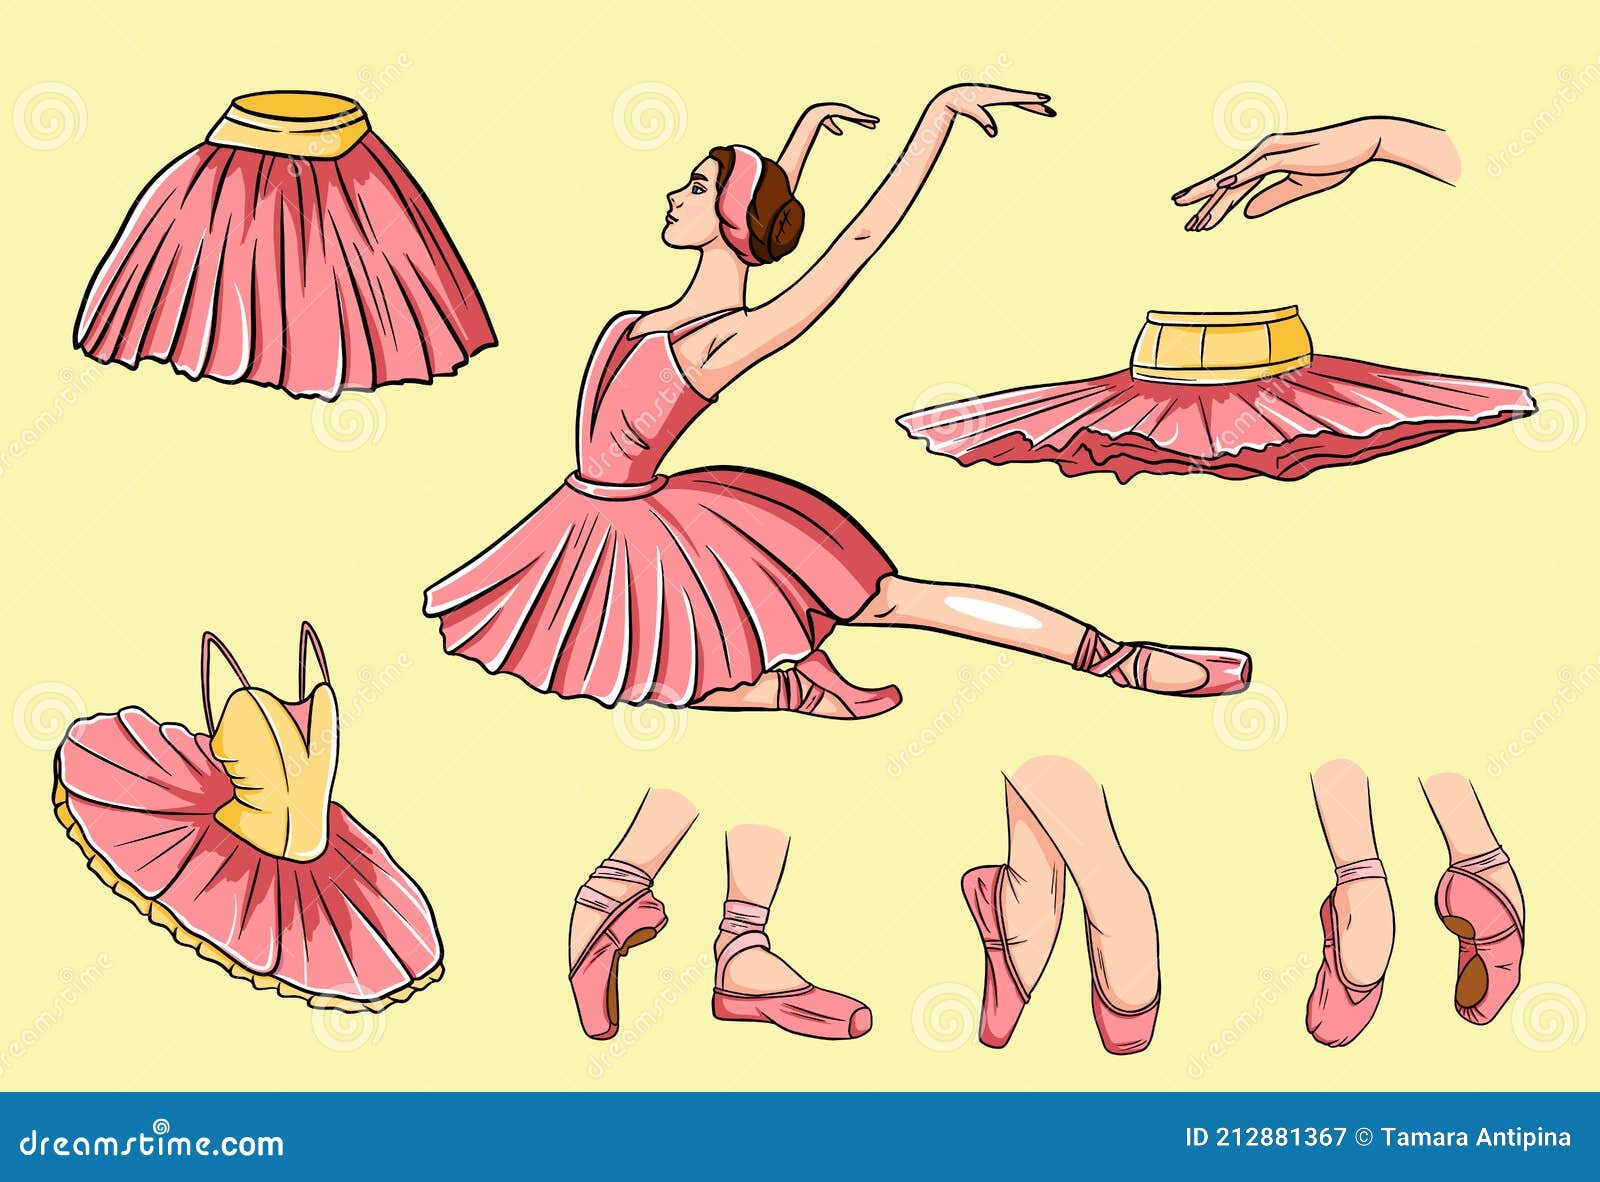 Vectores e ilustraciones de Ballet shoes para descargar gratis